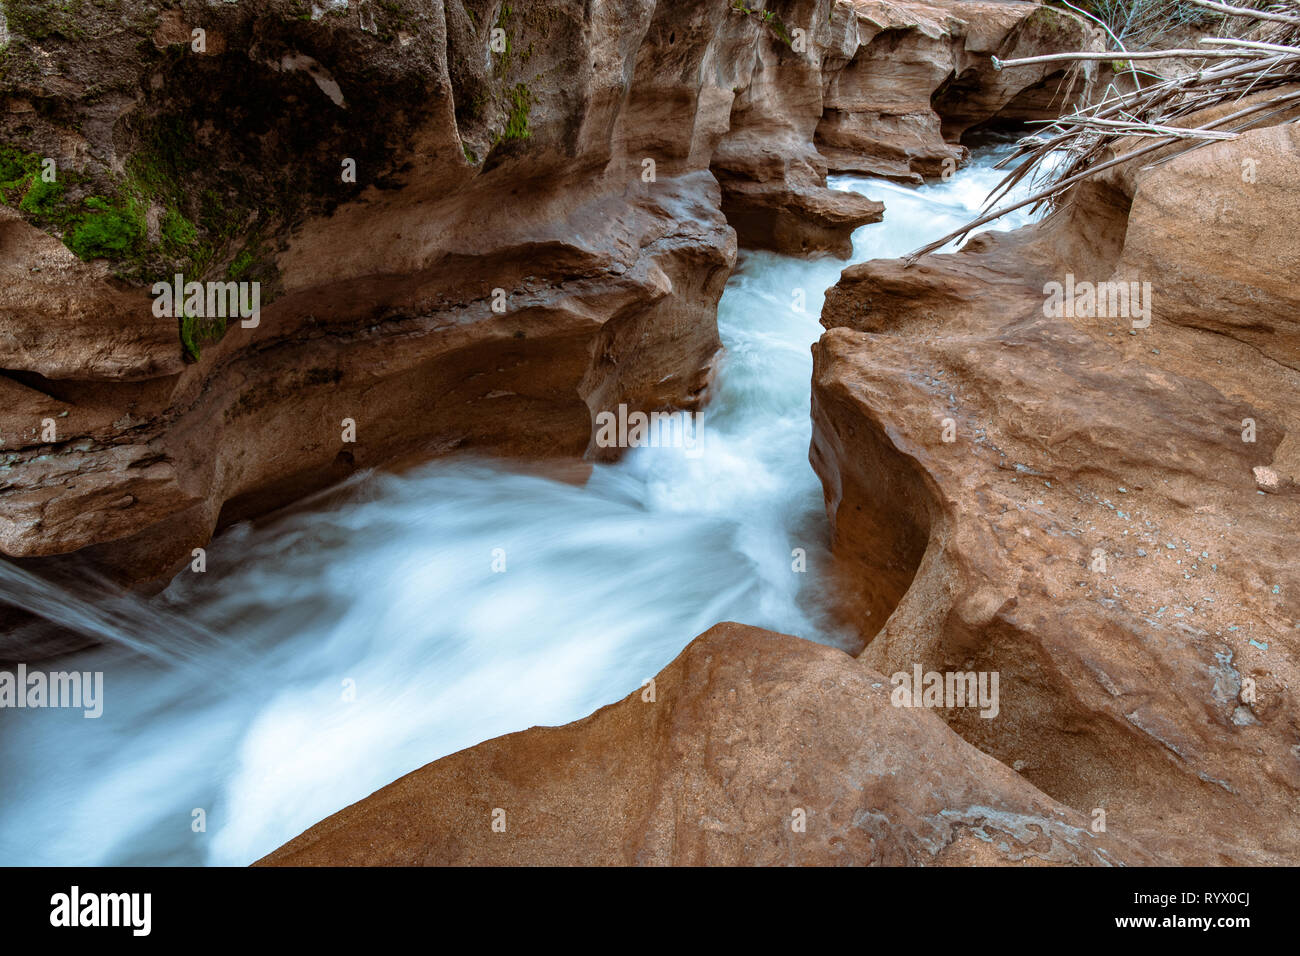 L'acqua che scorre e cascata attraverso una pietra arenaria slot canyon. Silky effetto dell'acqua con un flusso di acqua blu. Foto Stock